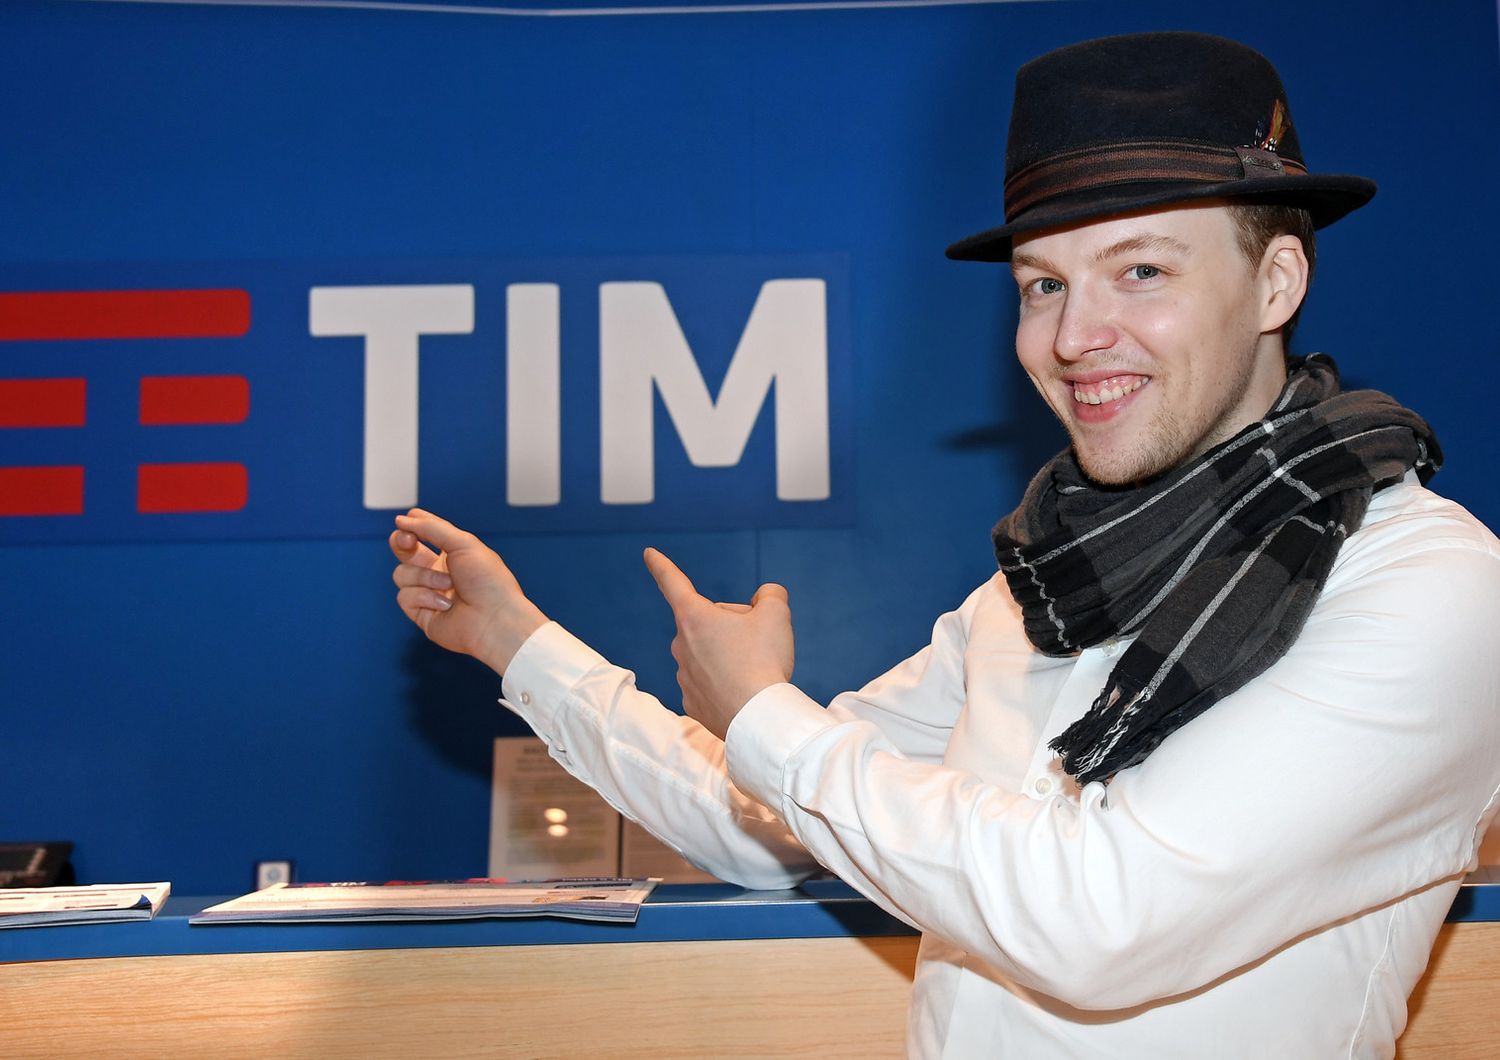 Tim &nbsp;Sven Otten il ballerino della pubblicita' &nbsp;(Agf)